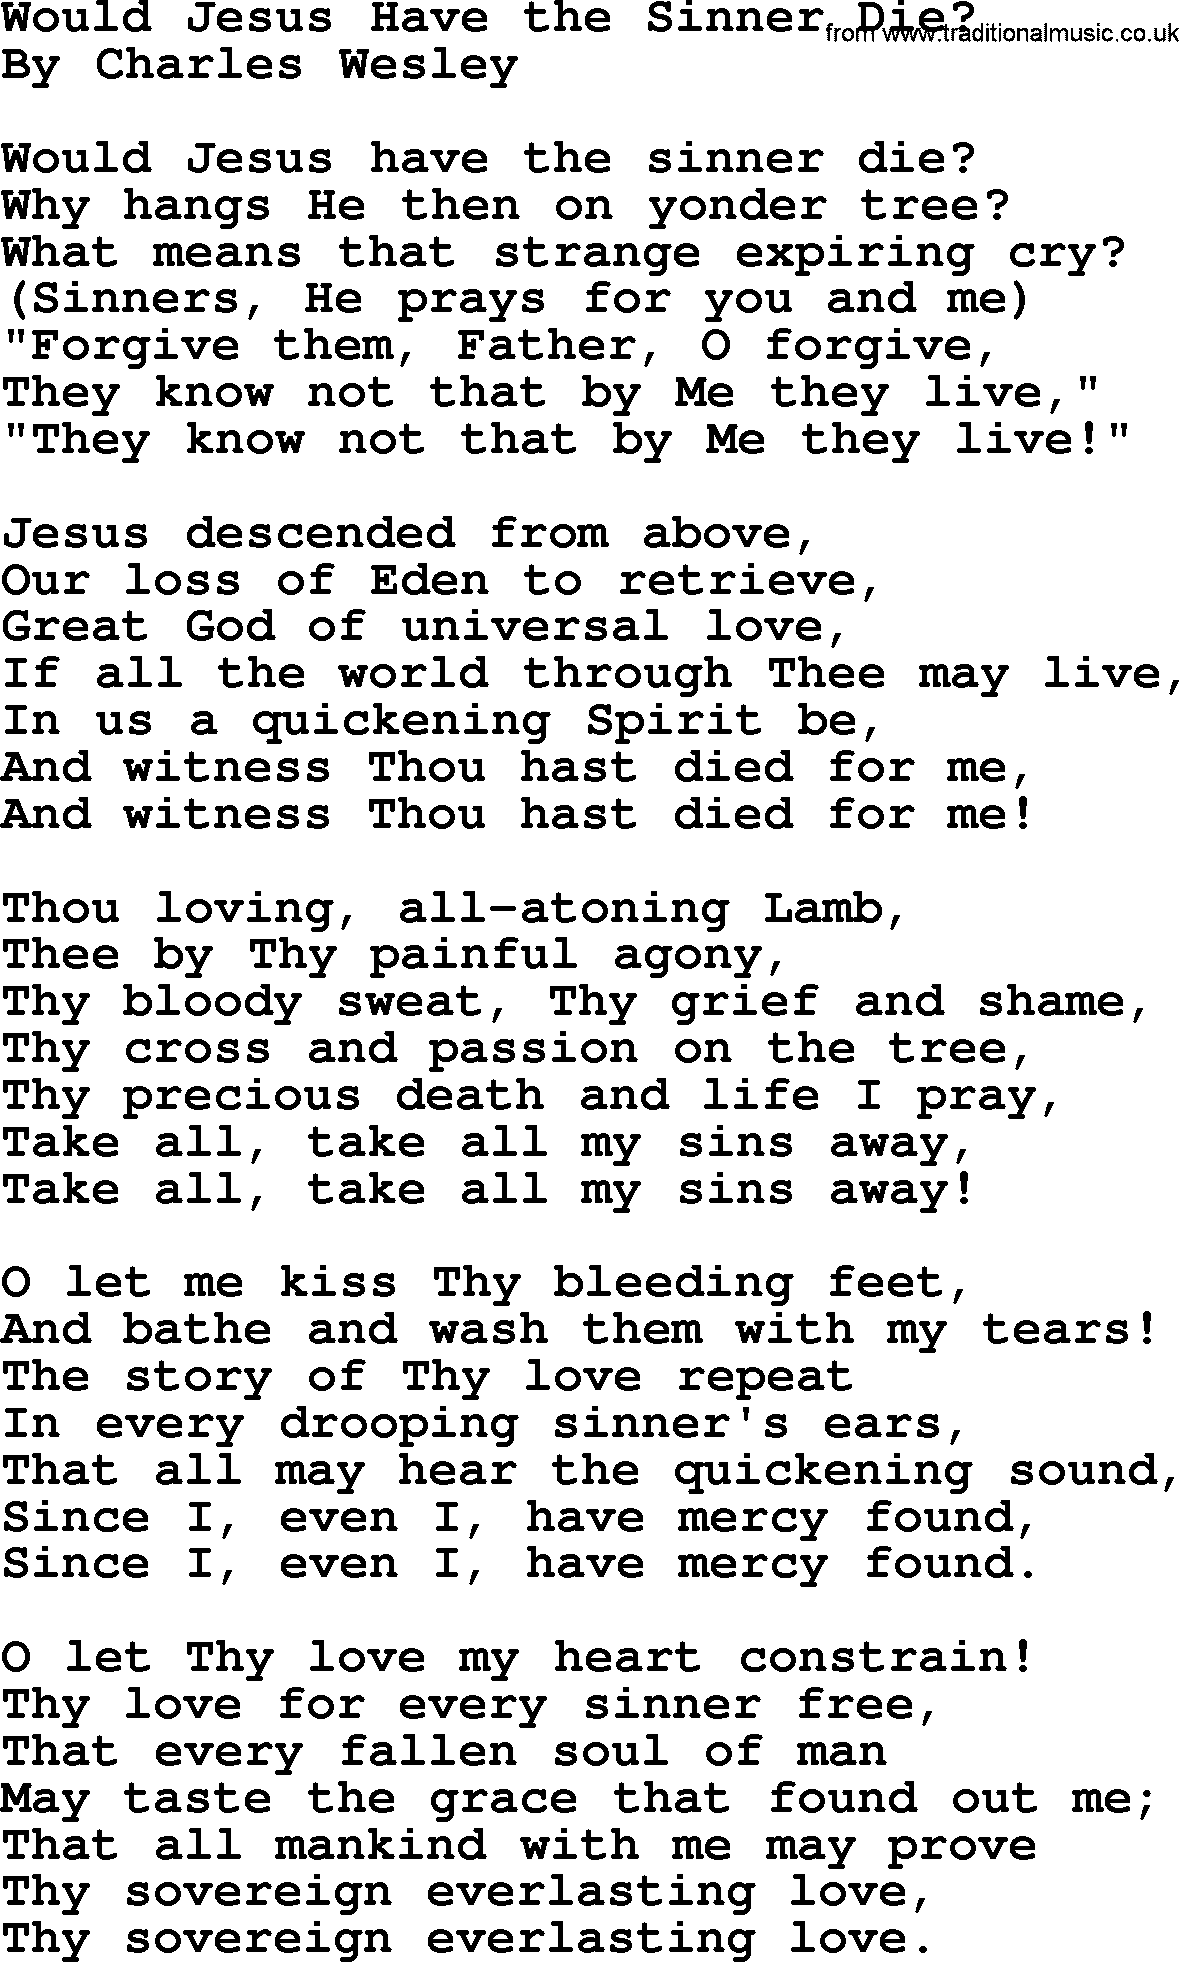 Charles Wesley hymn: Would Jesus Have The Sinner Die_, lyrics